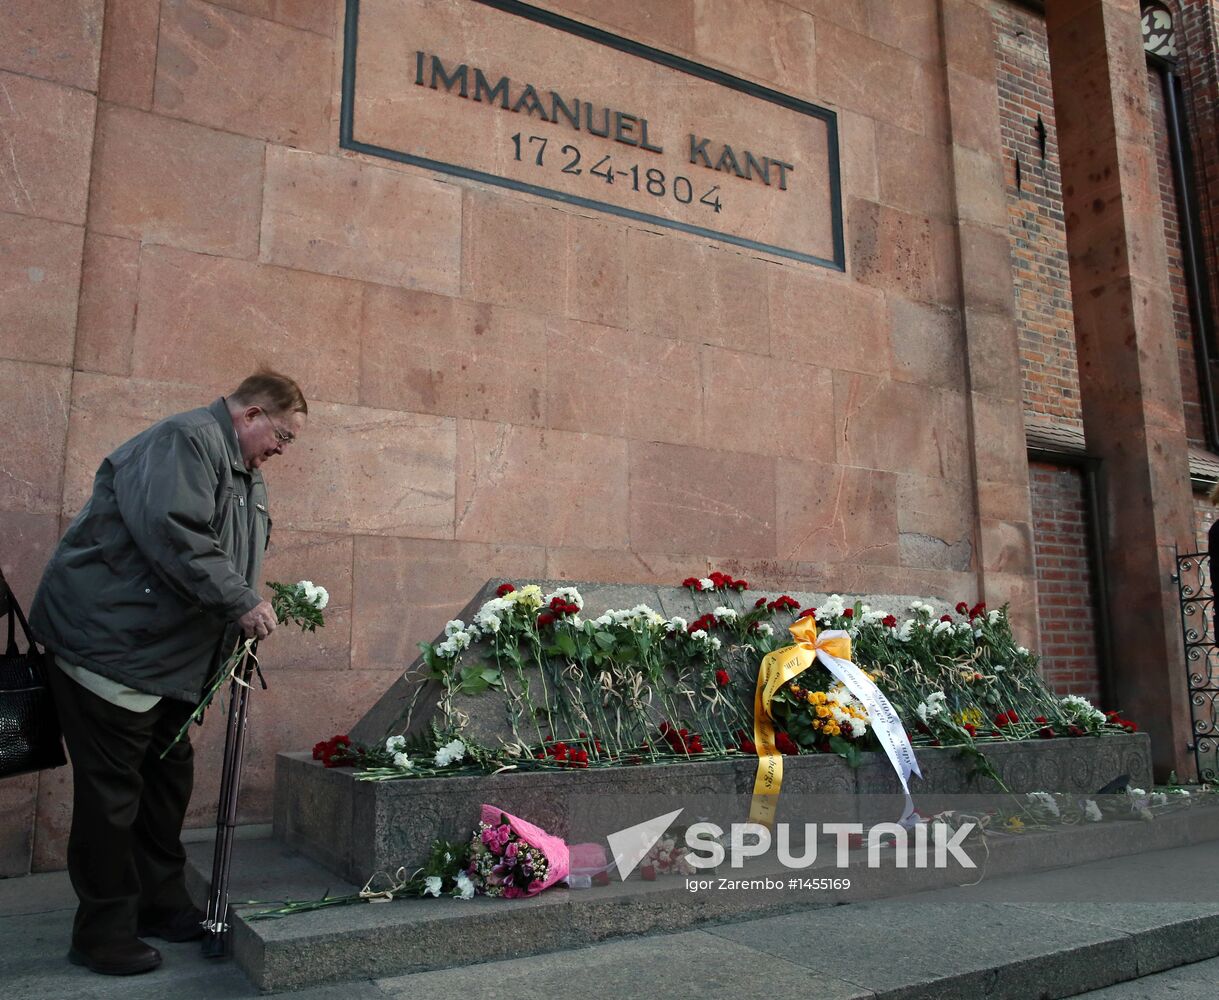 Immanuel Kant's birthday marked in Kaliningrad